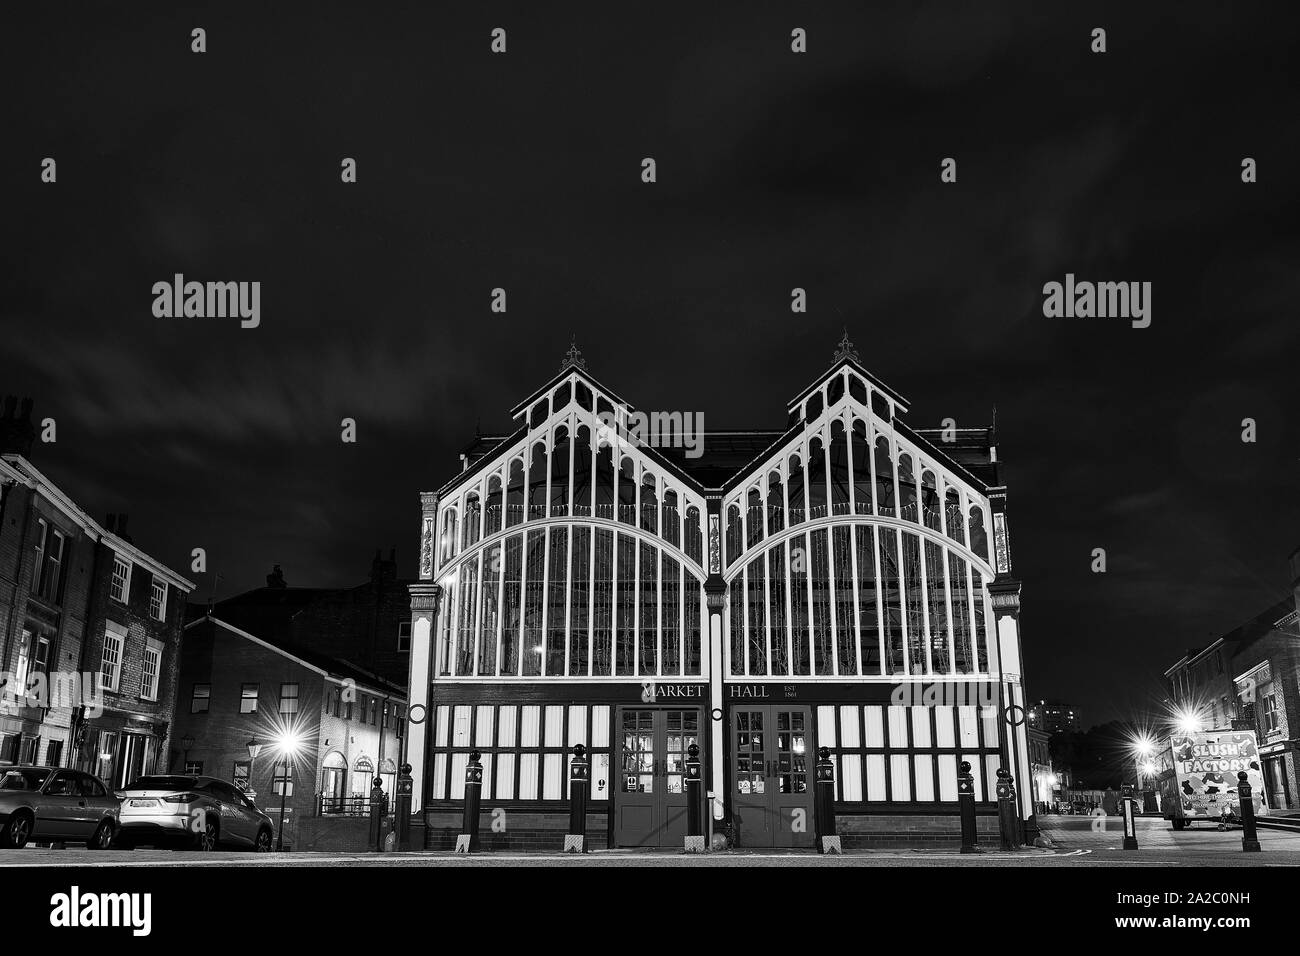 Market Hall de nuit en noir et blanc, Stockport, North West England Banque D'Images